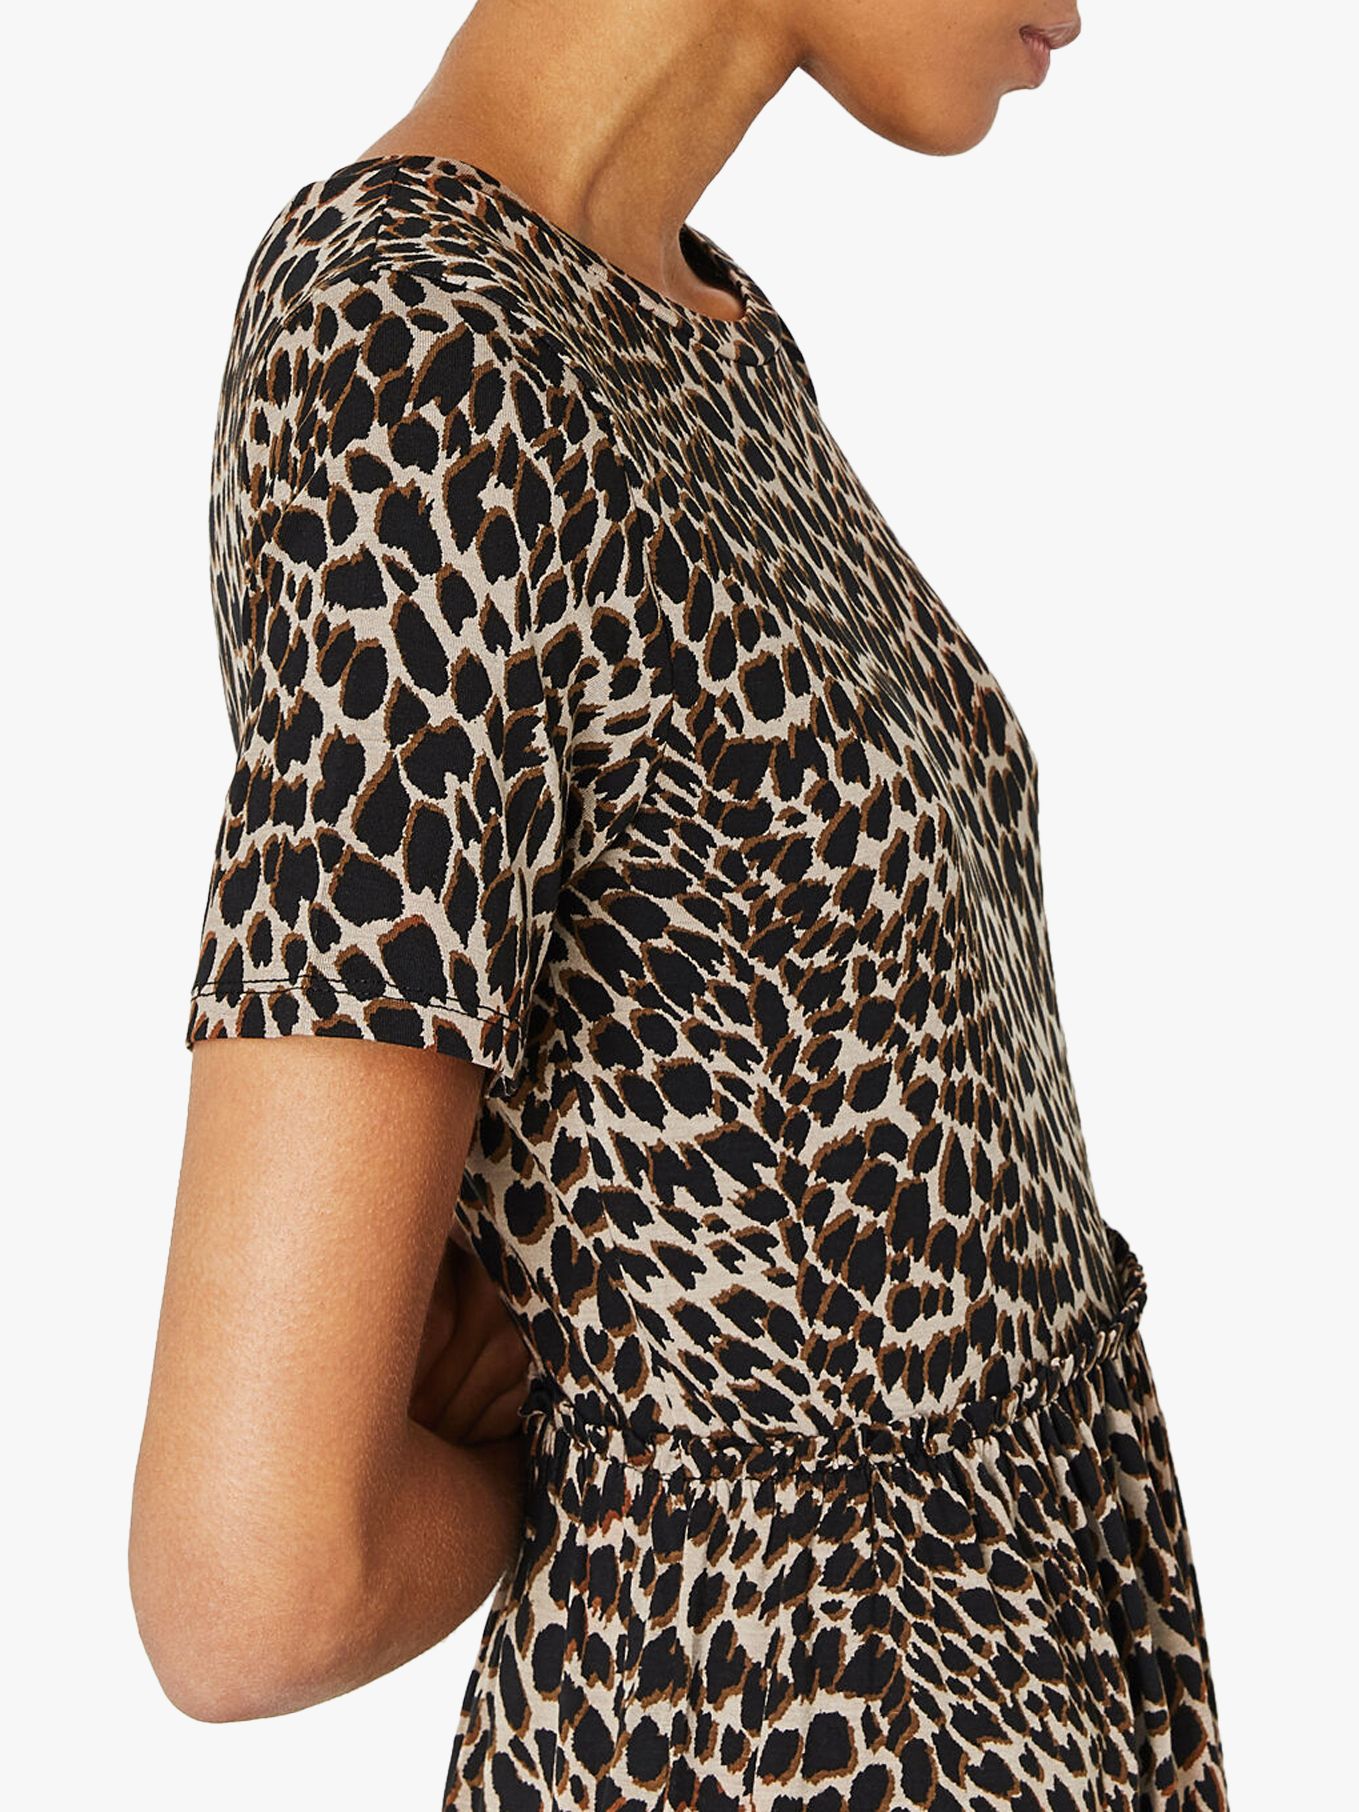 leopard print dress over t shirt